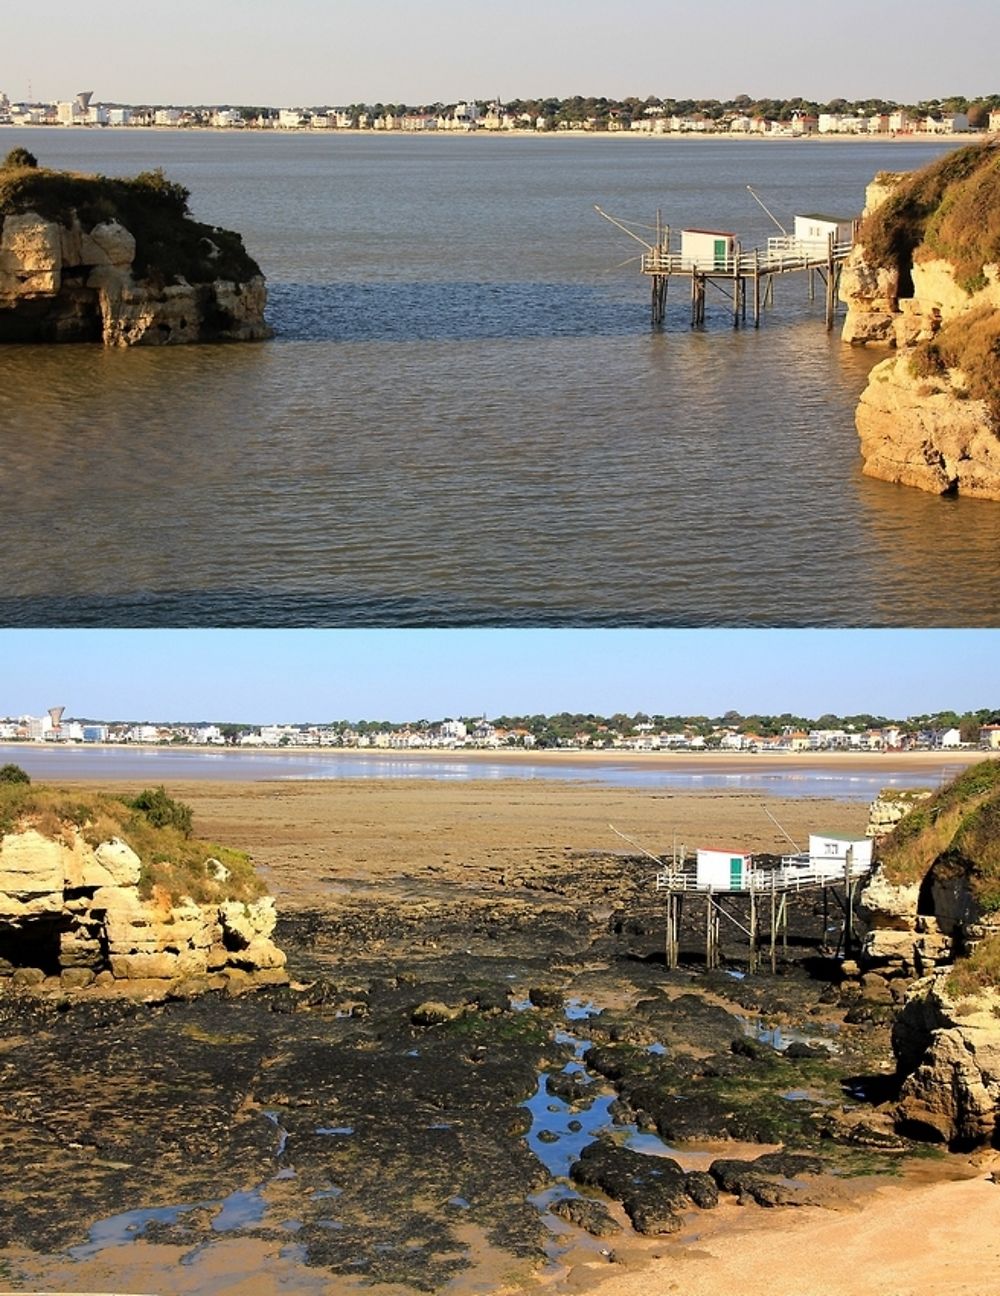 Re: Le long de la côte de Charente-Maritime, de phares en phares (seconde partie) : de l'île d'Oléron à la côte royannaise. - jem